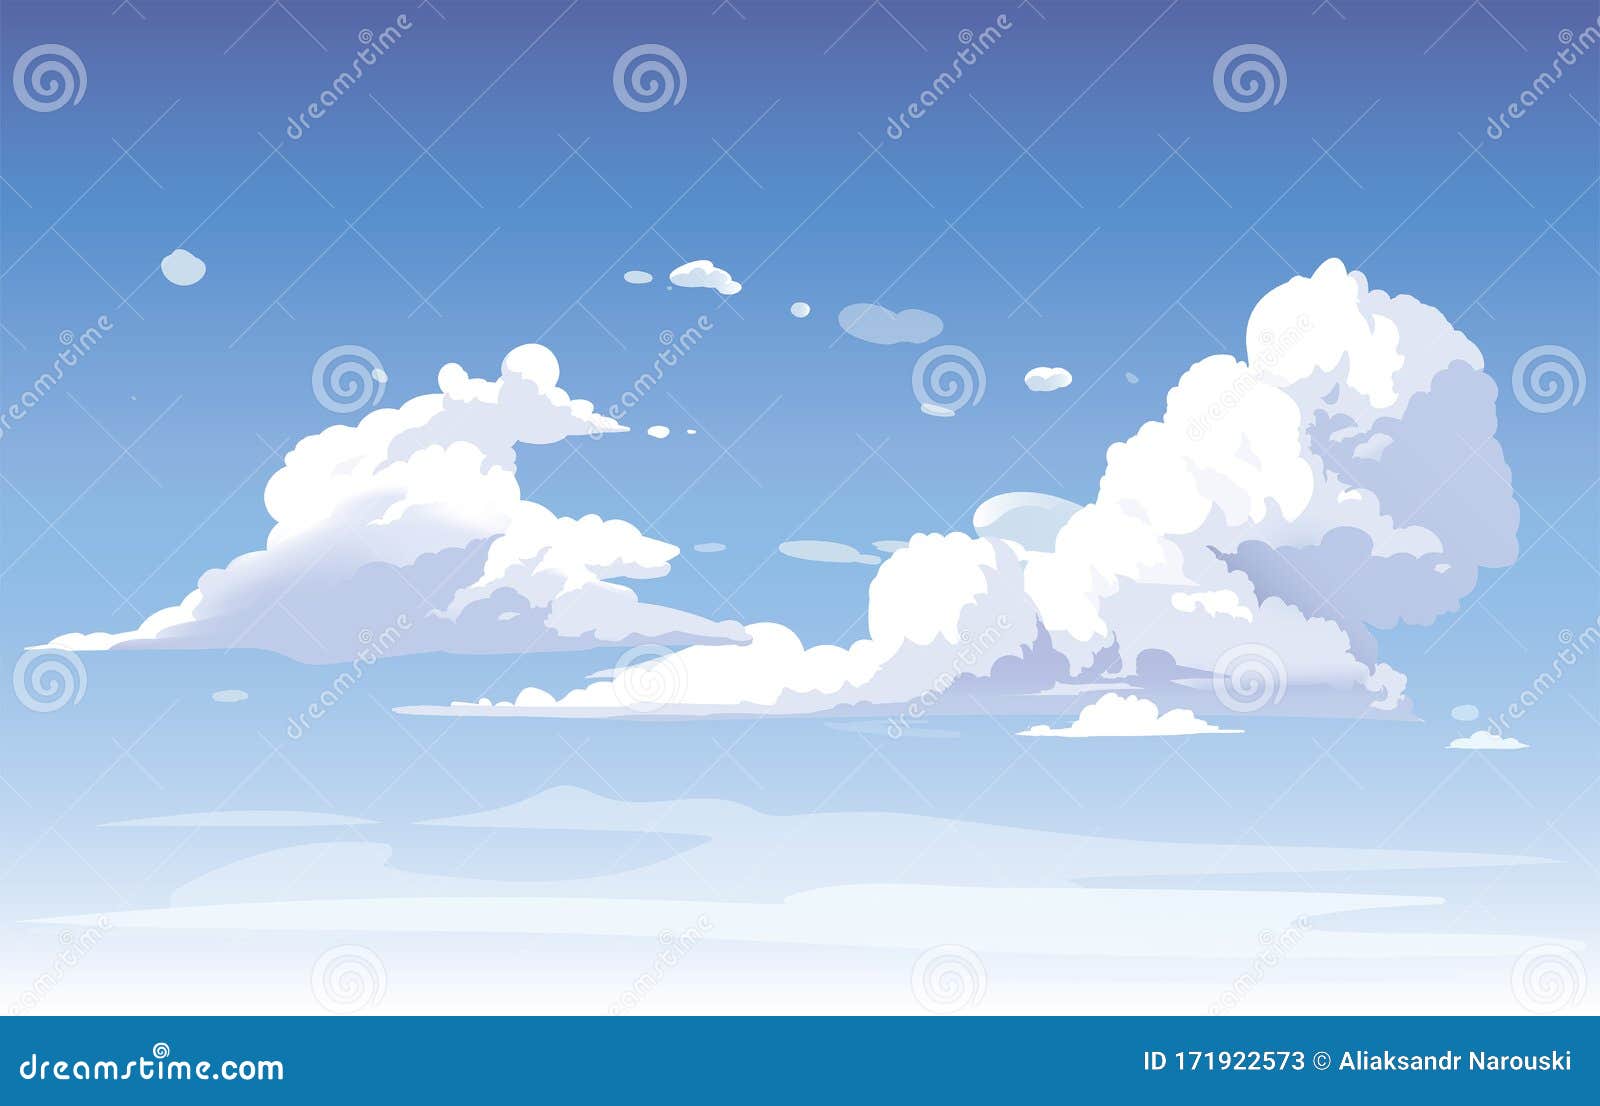 Hình nền anime với đám mây phủ kín, tạo nên một khung cảnh thần tiên đầy mê hoặc. Hãy đến và thưởng thức bộ sưu tập hình nền đẹp mắt này ngay nào!